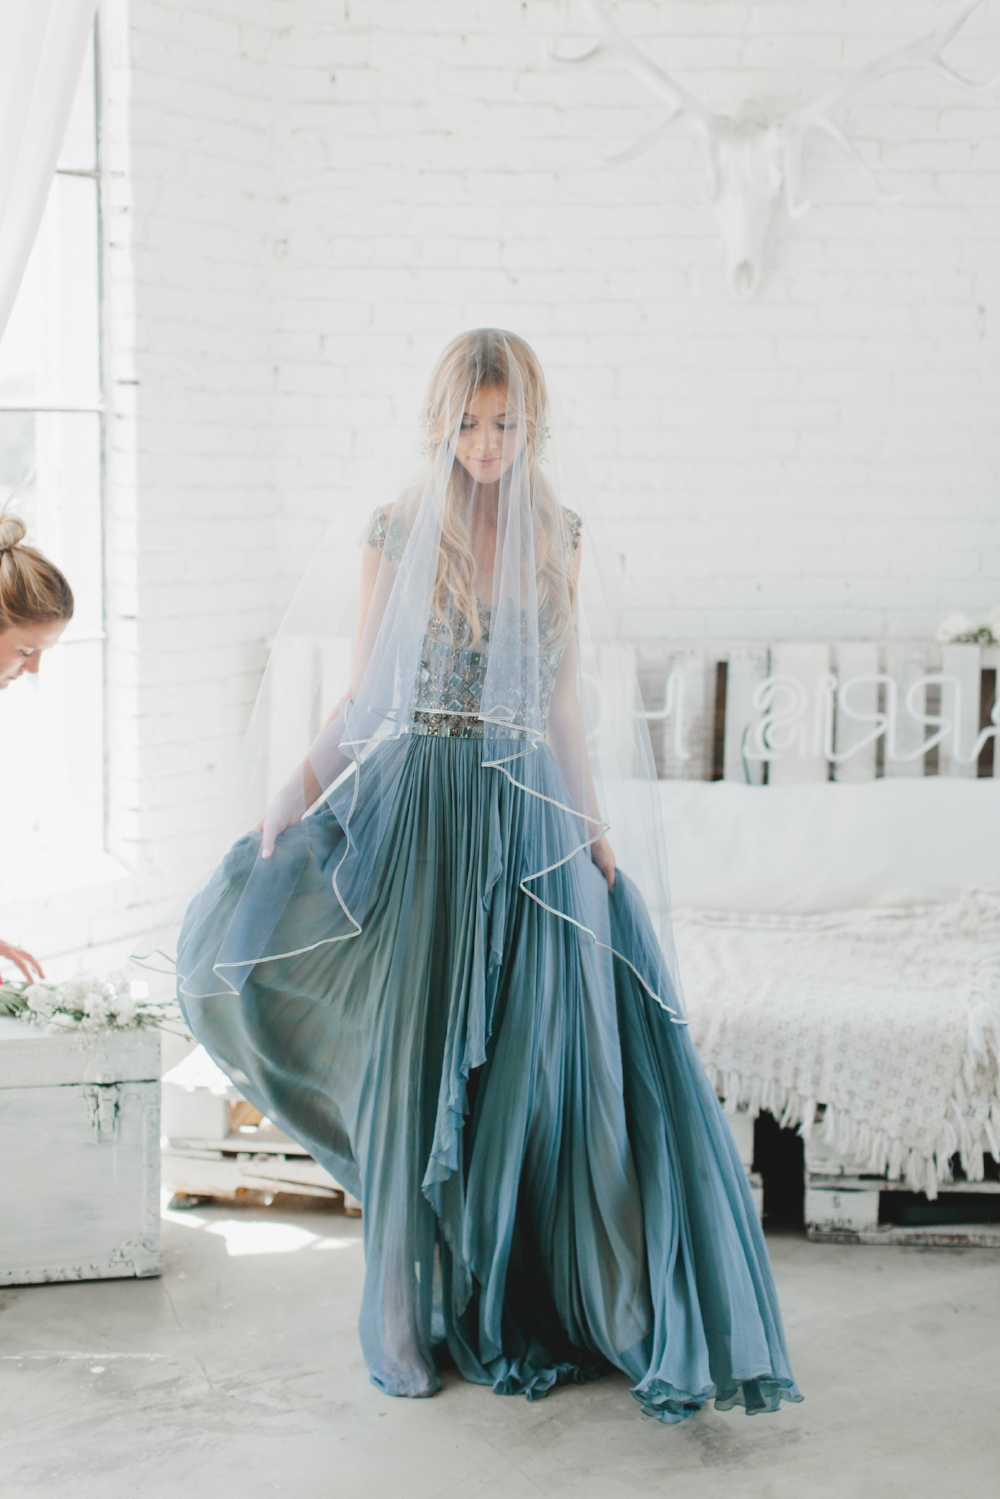 Unique Navy Blue Tulle Bridal Veil - June Bridals